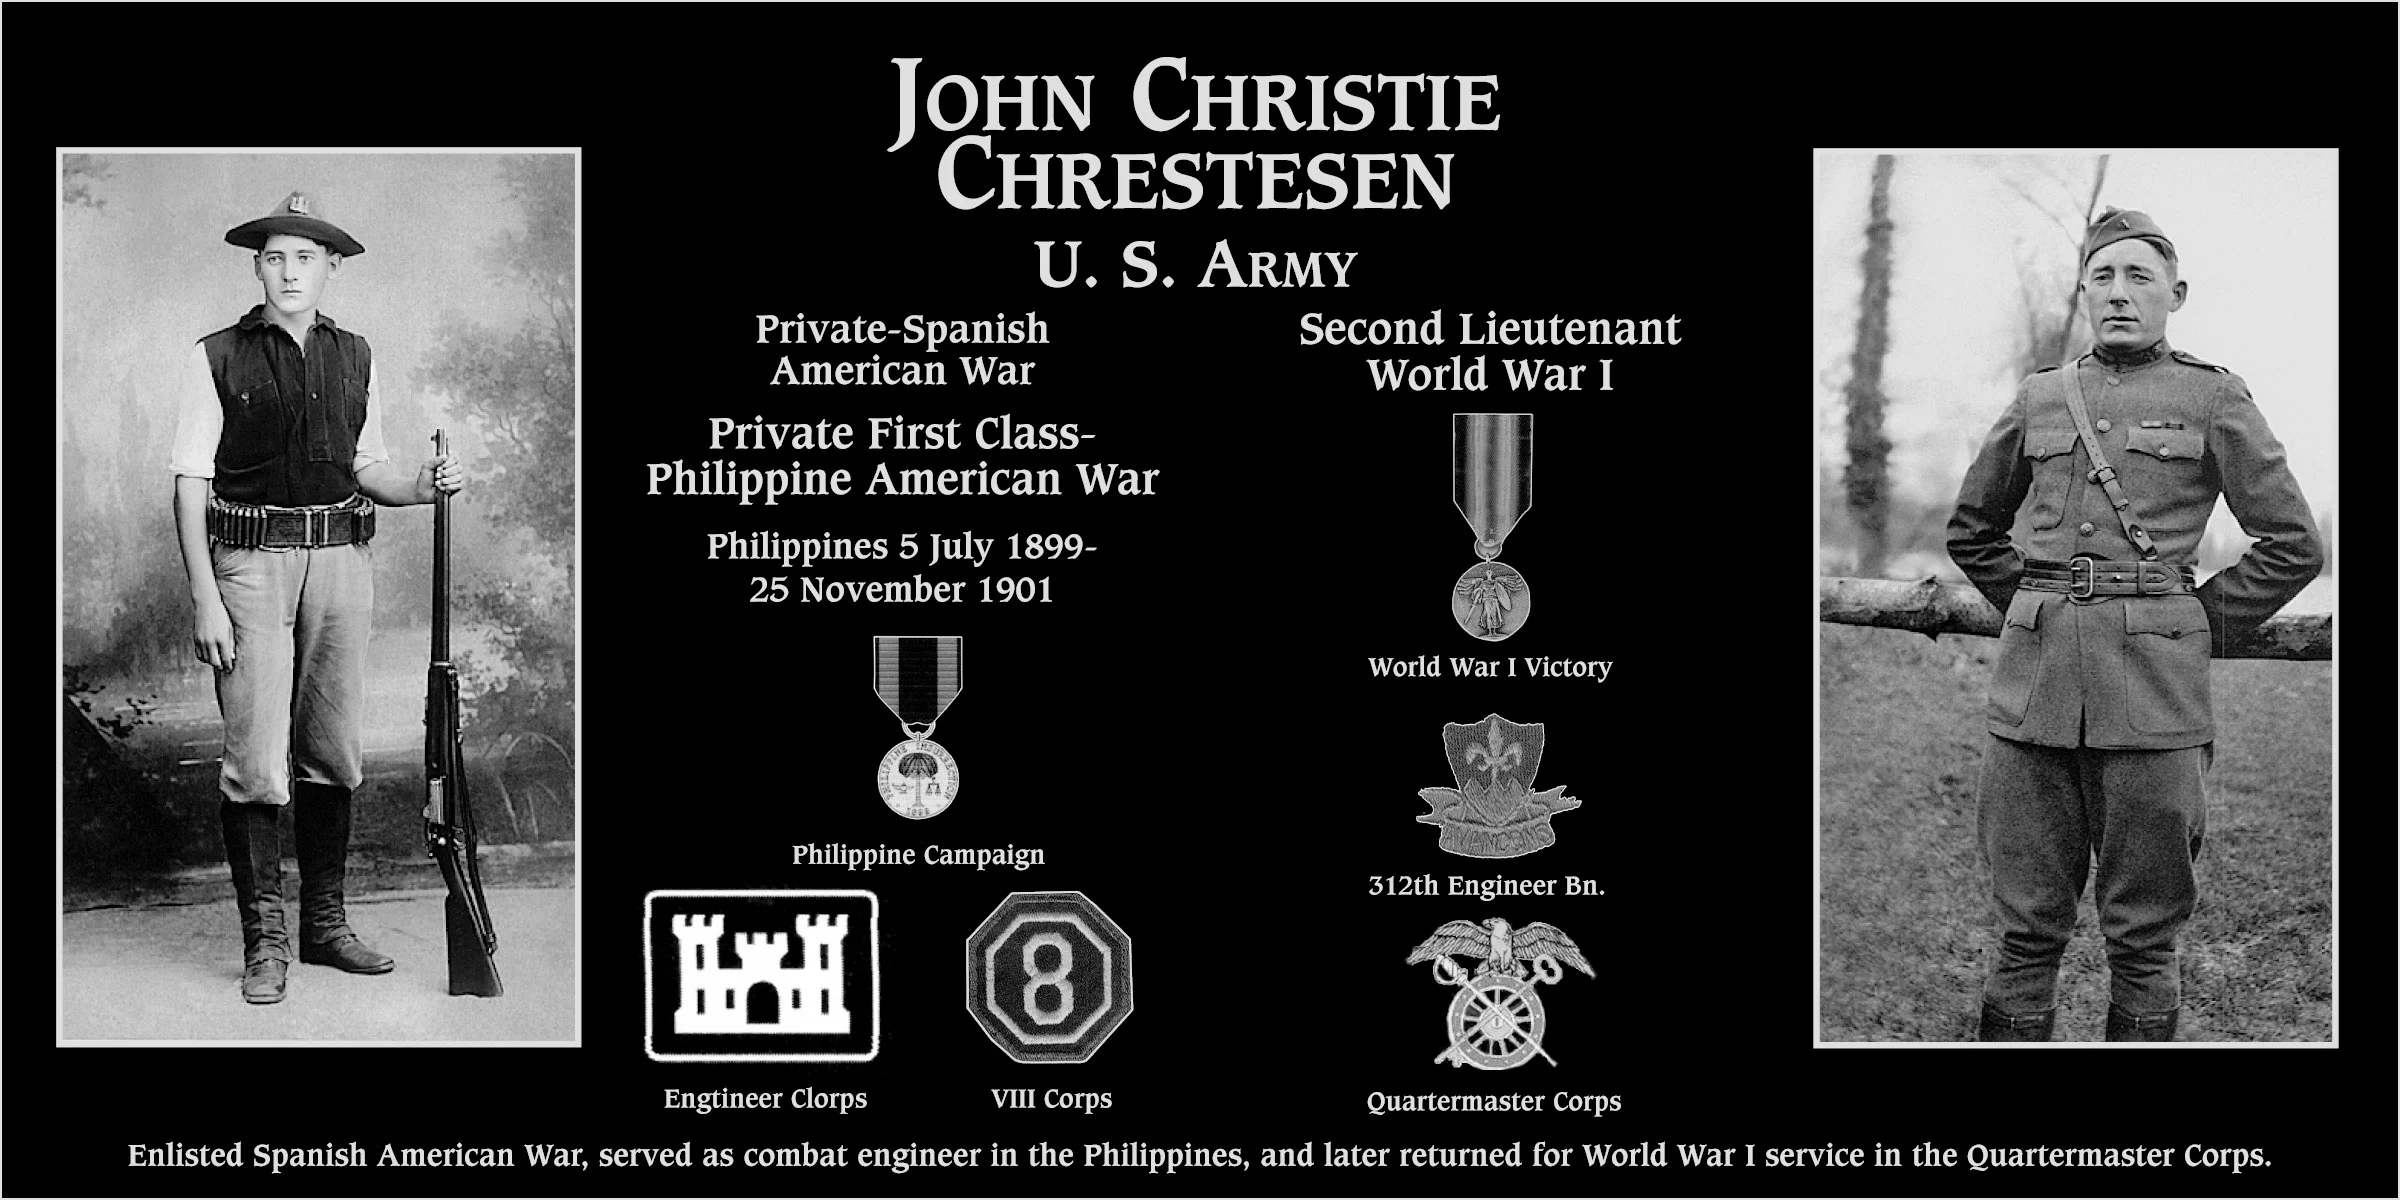 John Christie Chrestesen